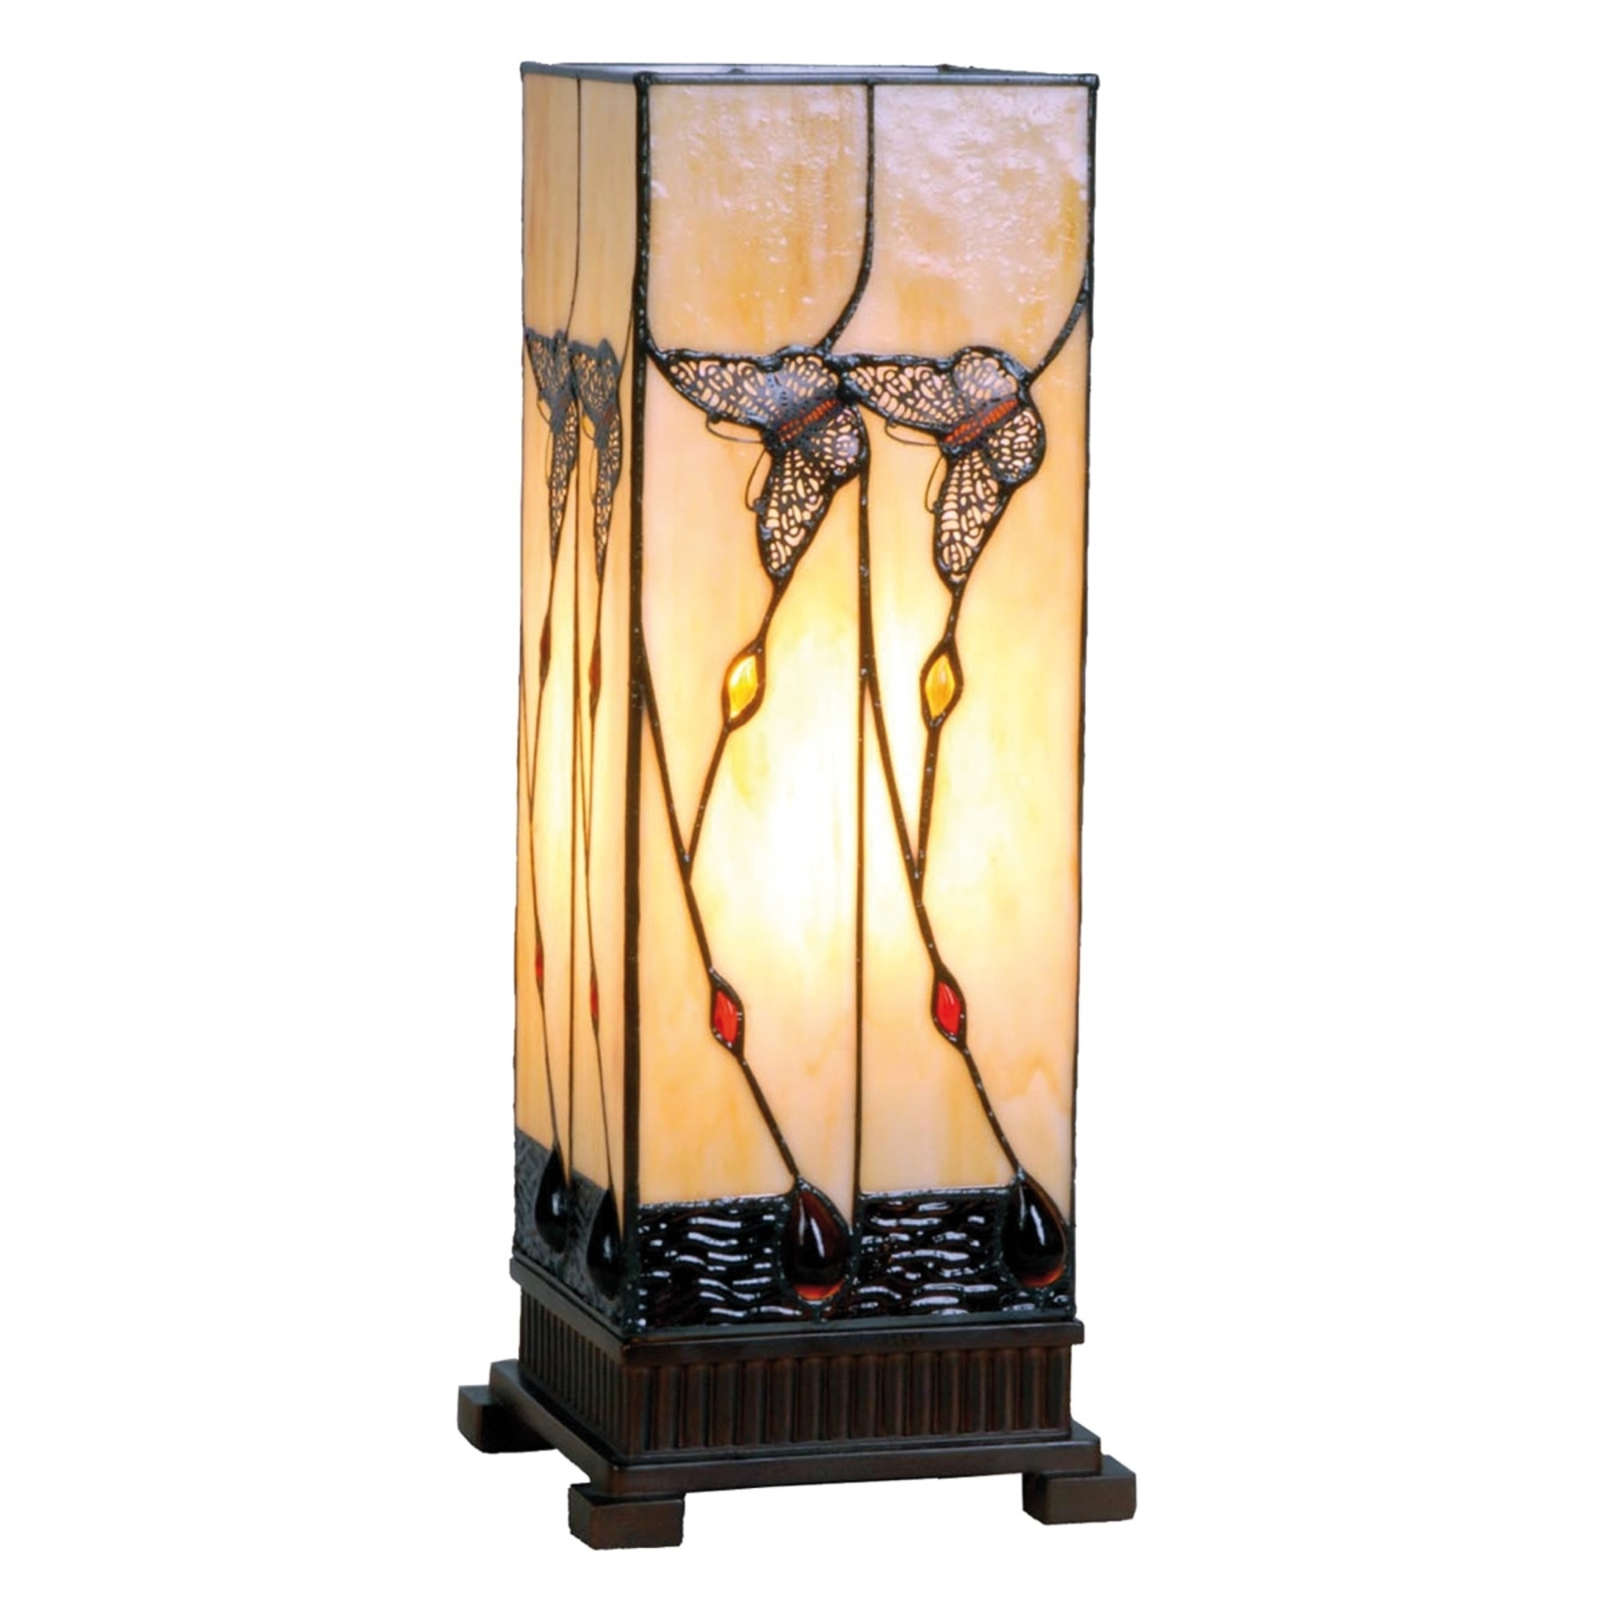 Amberkleurige tafellamp Amberly, 45 cm